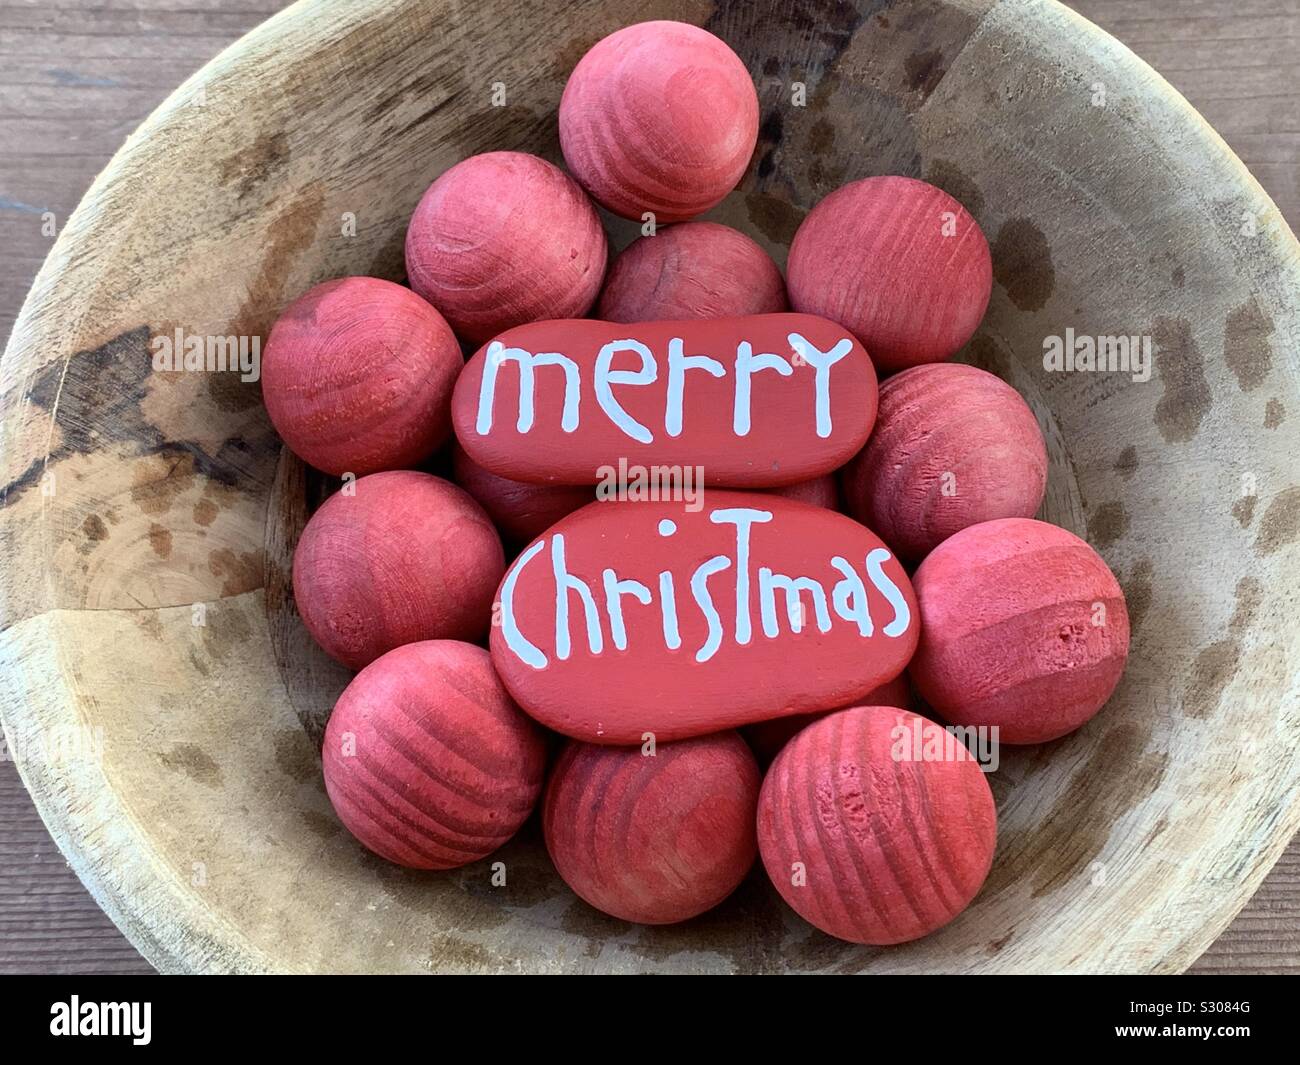 Feliz Navidad mensaje tallados y pintados en dos piedras en una cesta con bolas de madera roja Foto de stock